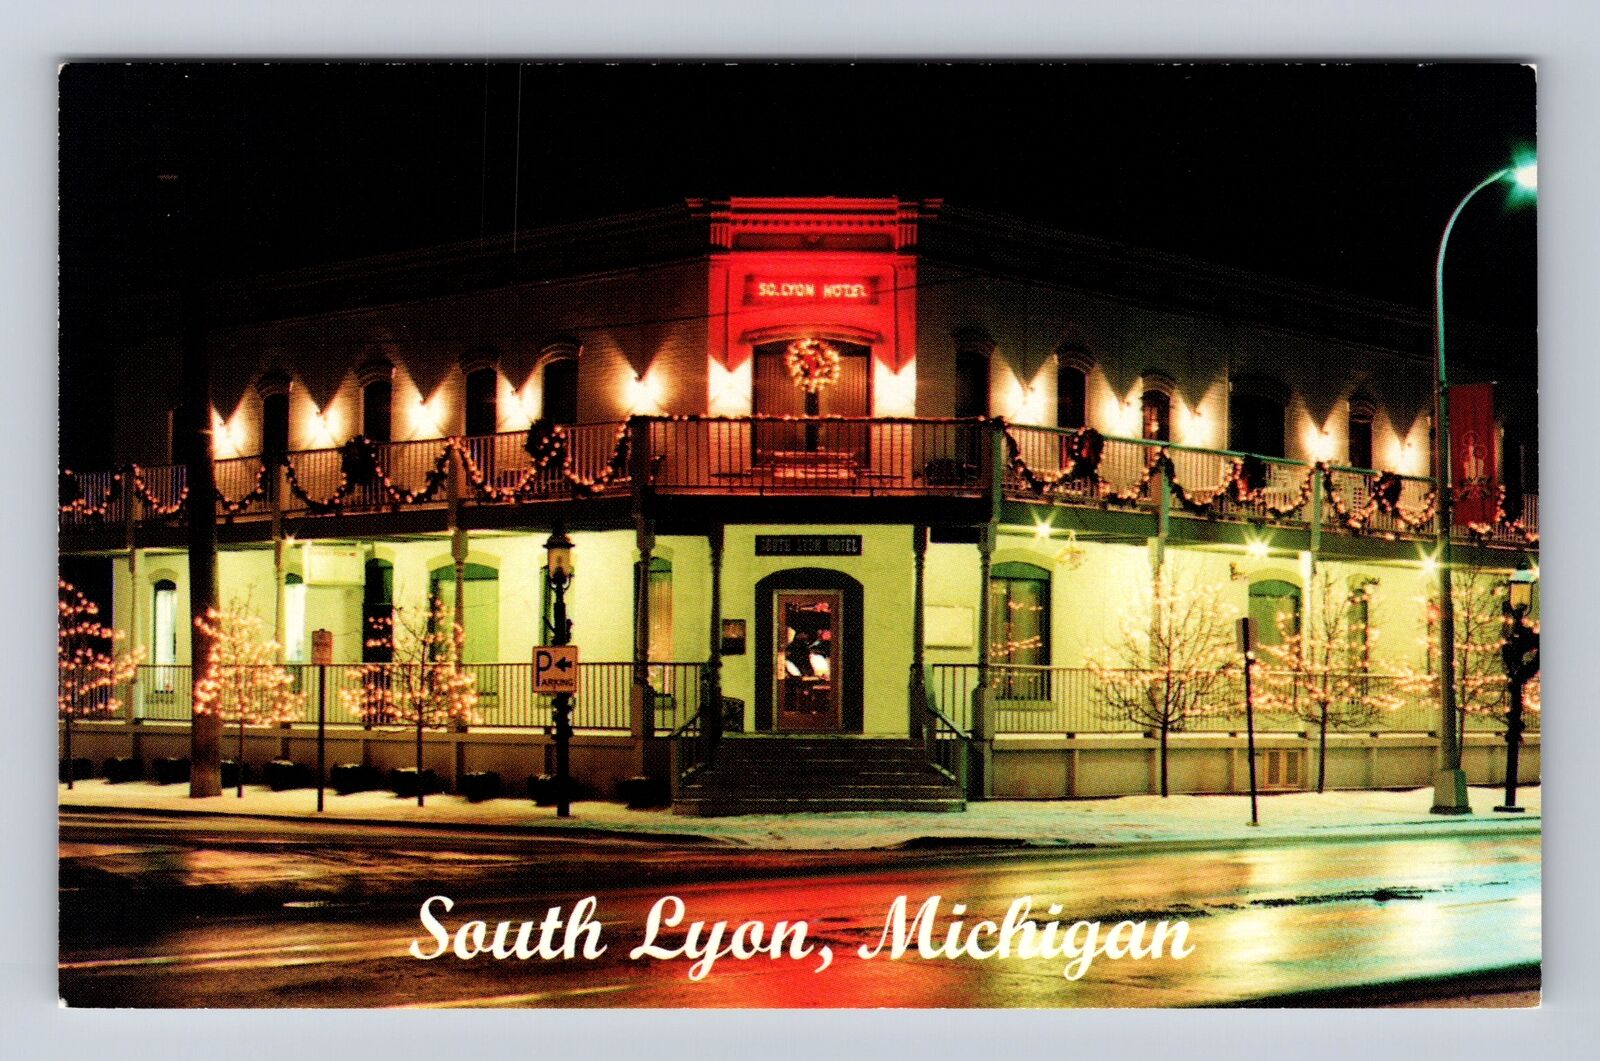 South Lyon MI-Michigan, The Historic South Lyon Hotel, Vintage Souvenir Postcard